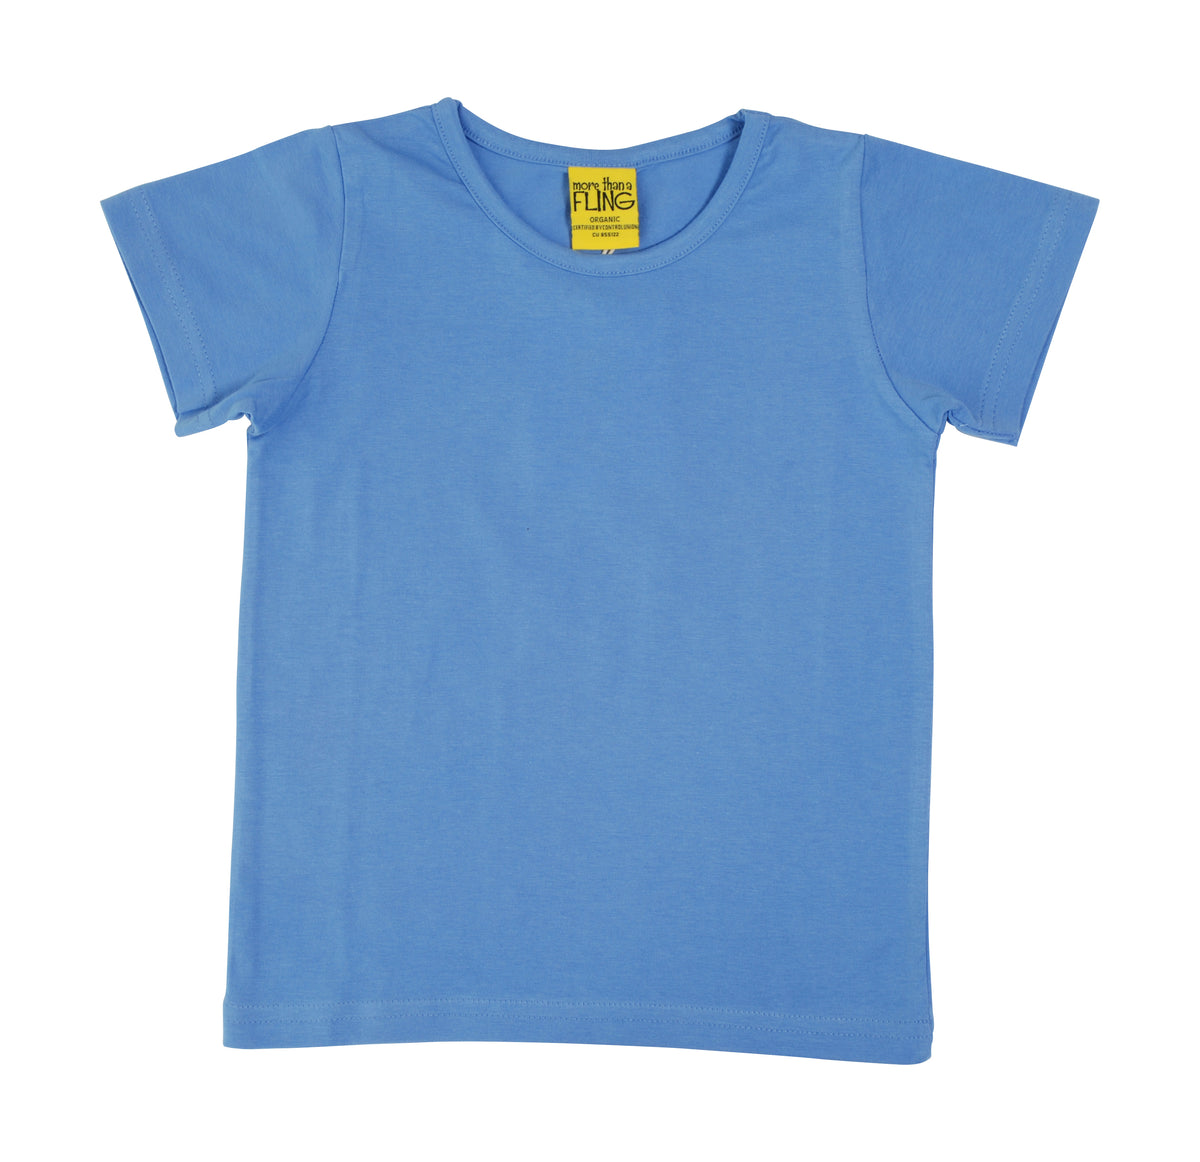 More Than A Fling T-Shirt Corn Flower Blue - Korenbloem Blauw T-shirt